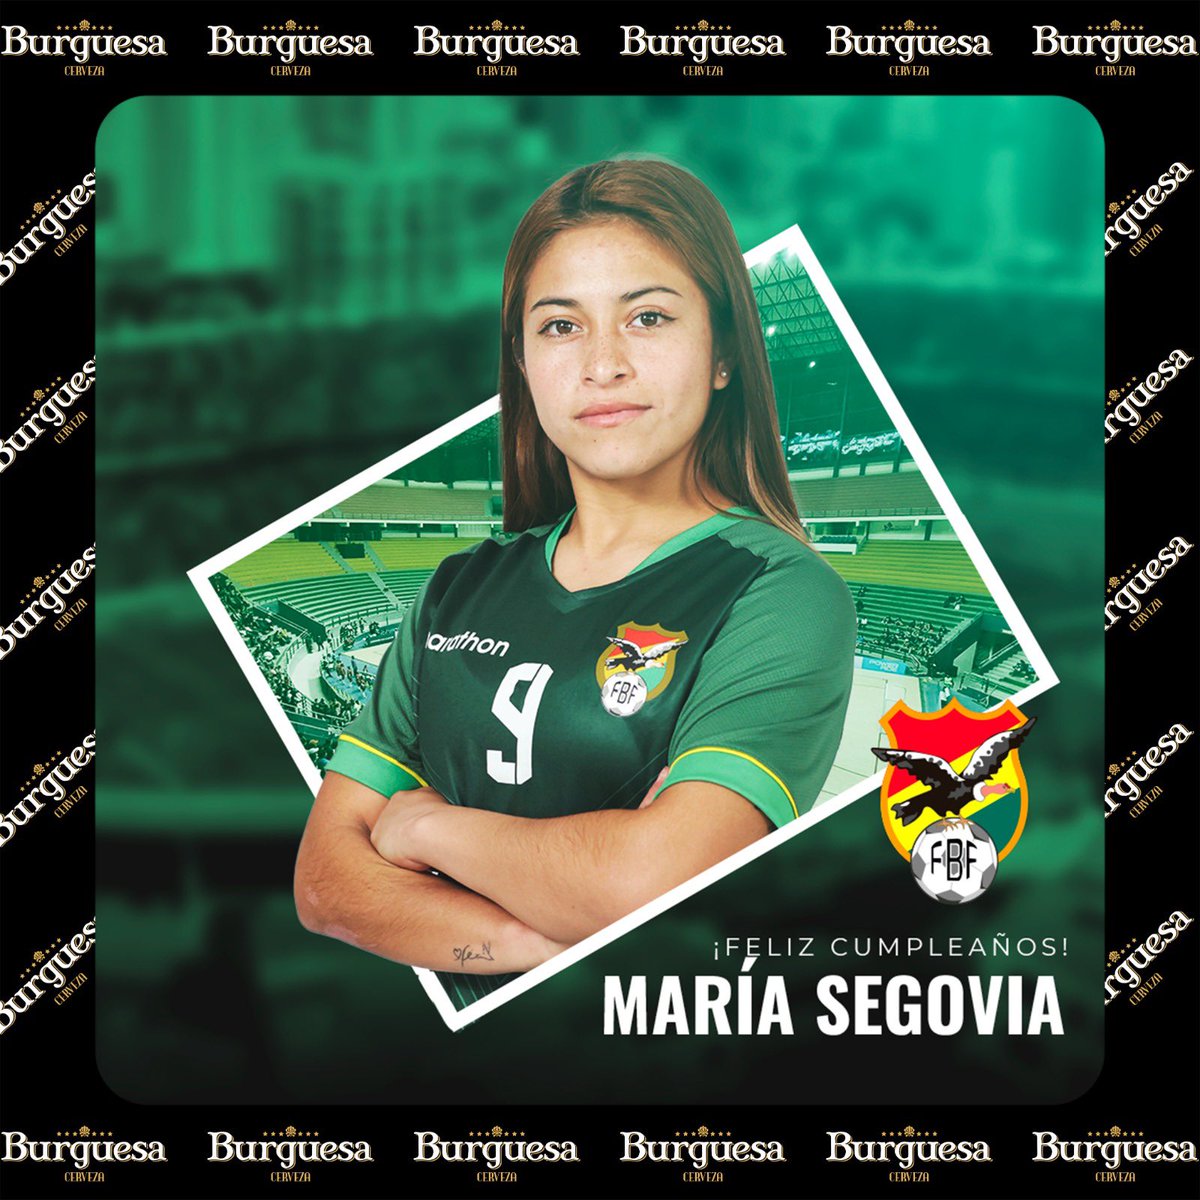 🇧🇴👑¡FELIZ CUMPLEAÑOS!👏 Hoy celebramos el cumpleaños de Segovia Maria, delantera de de nuestra selección Femenina🎂 !Muchas felicidades y los mejores deseos!⚽ #ALaVerdeSiempre❤️💛💚 #FBFtrabajando